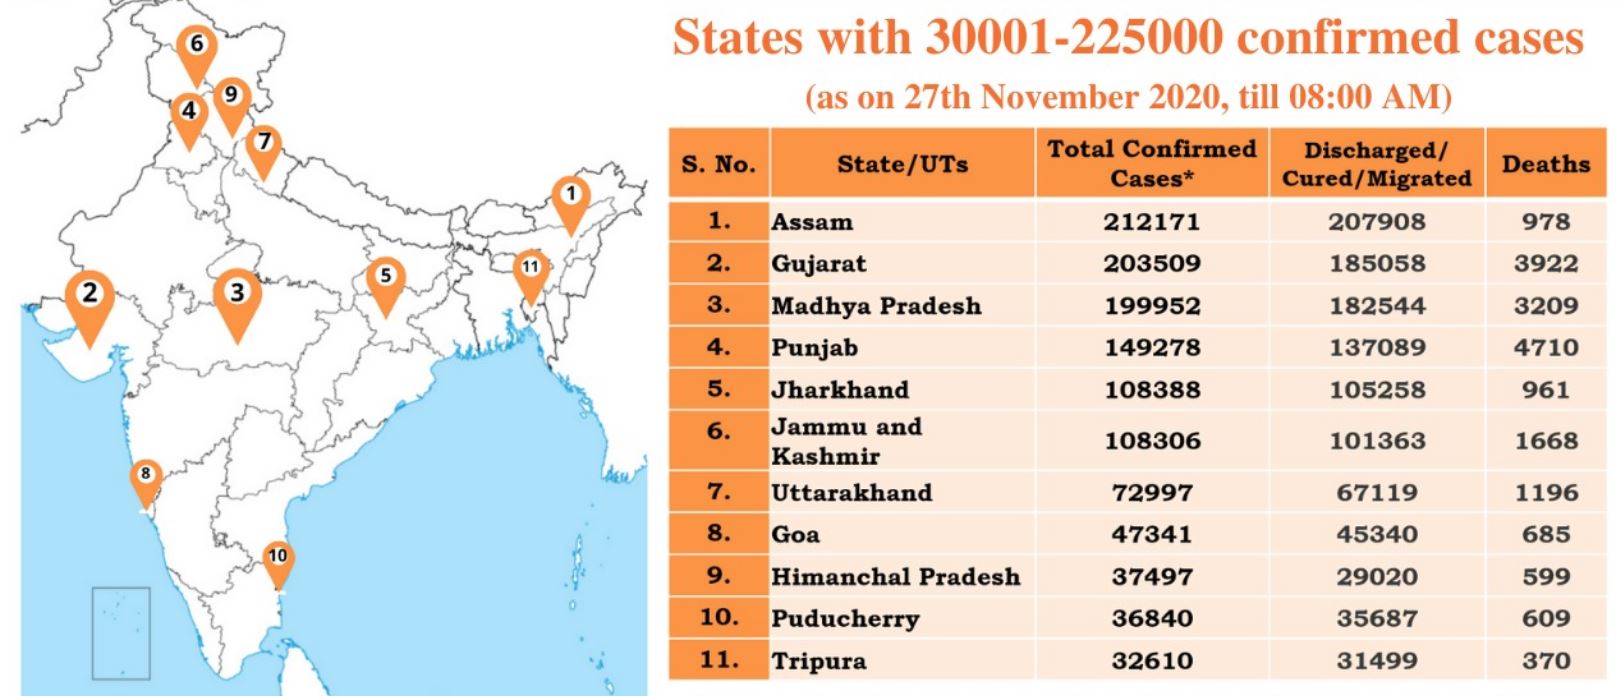 ऐसे राज्यों की सूची जहां कोरोना संक्रमण के 2.25 लाख तक मामले हैं